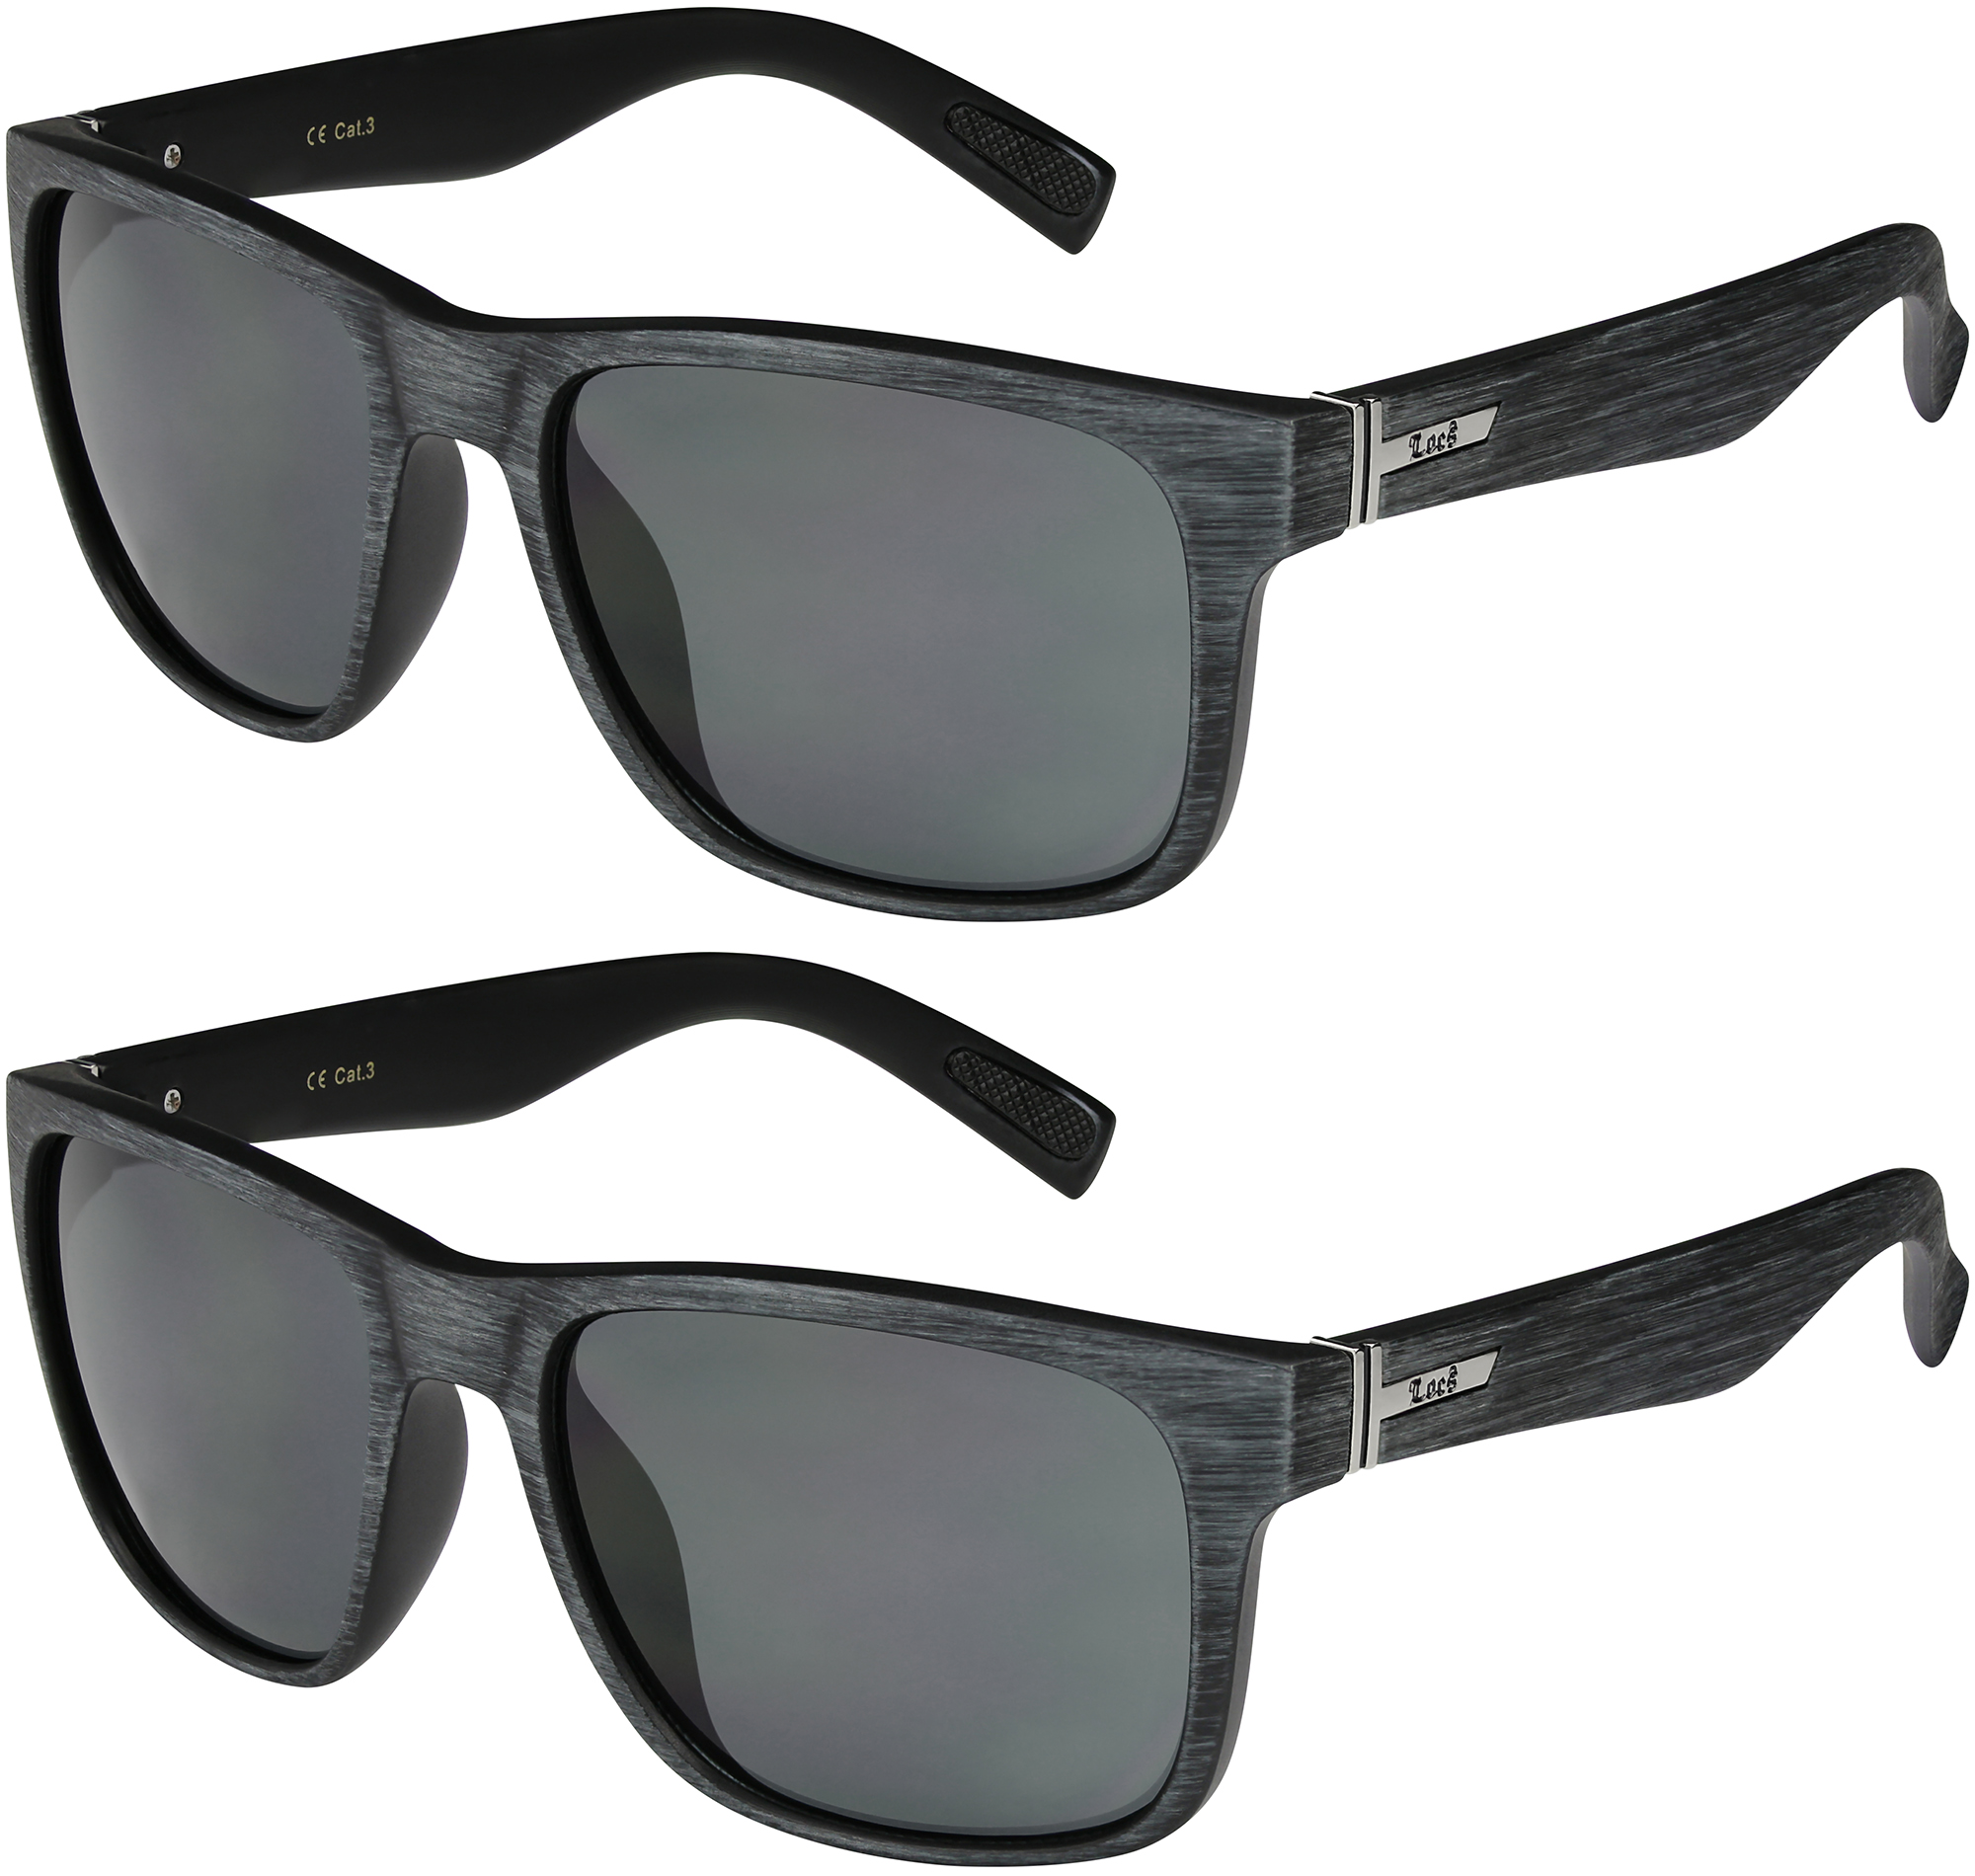 2er Pack Locs 2003 Choppers Sport Brille Sonnenbrille Herren Damen schwarz weiß 